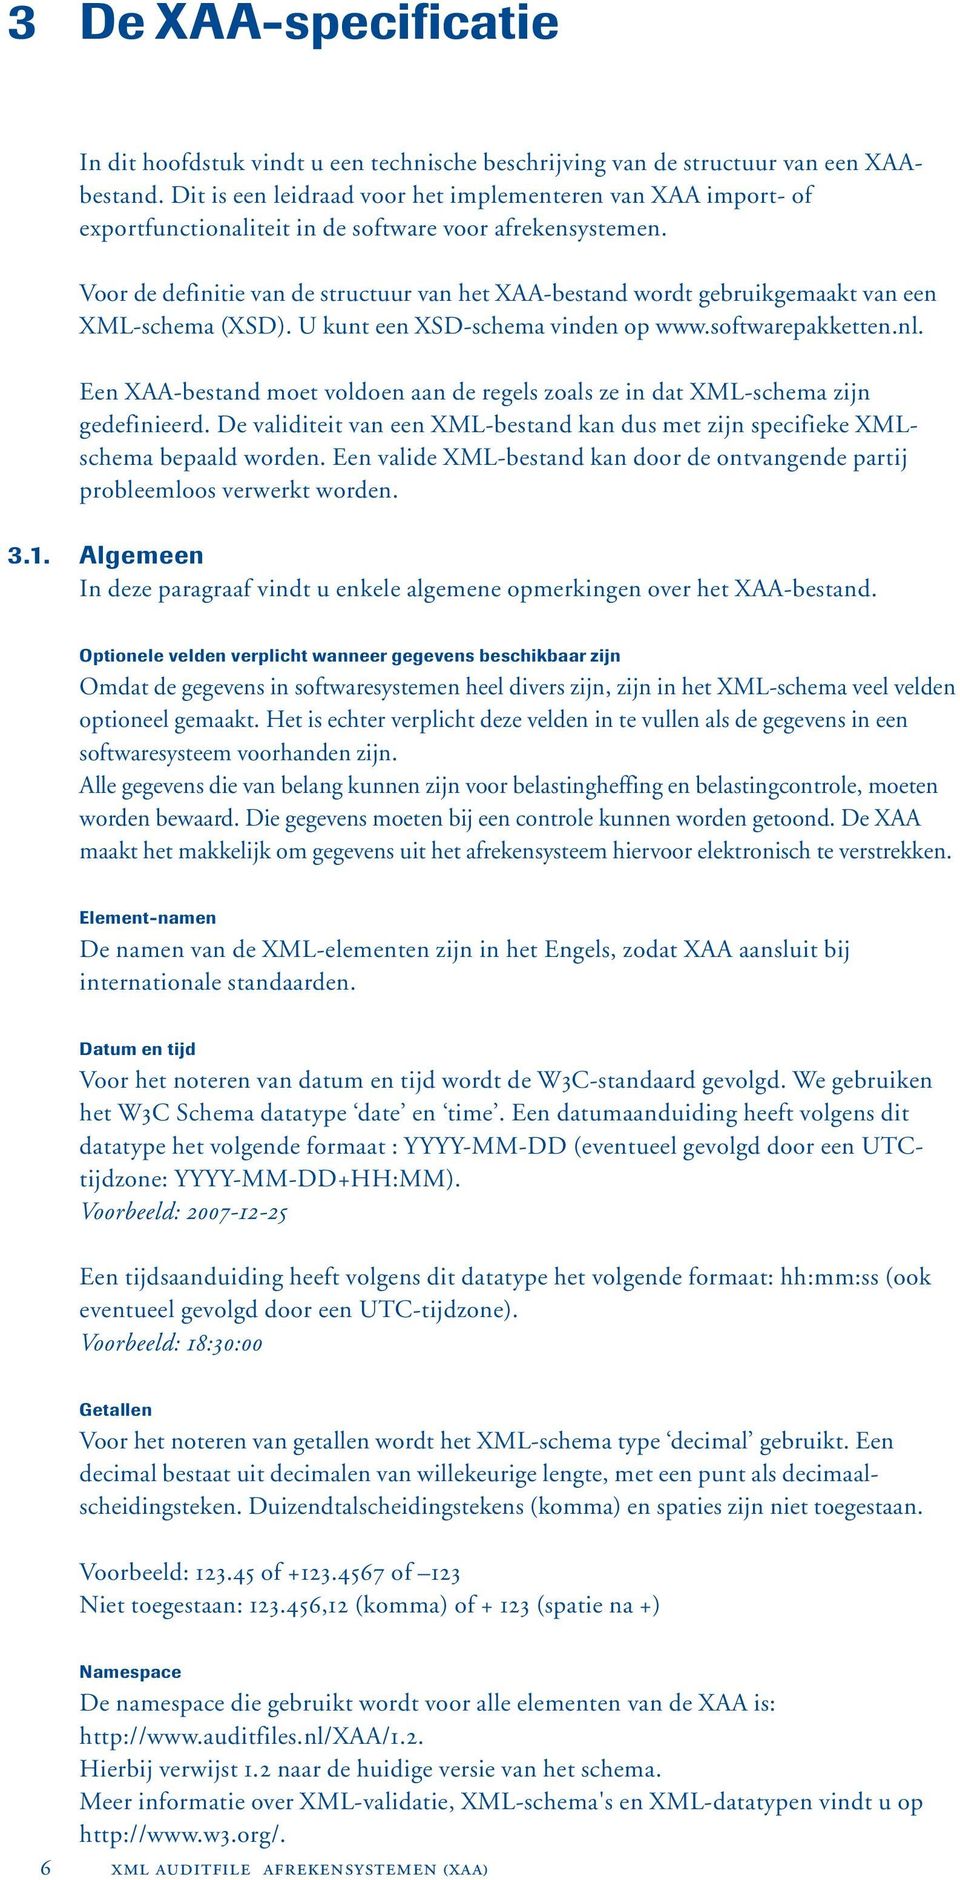 Voor de definitie van de structuur van het XAA-bestand wordt gebruikgemaakt van een XML-schema (XSD). U kunt een XSD-schema vinden op www.softwarepakketten.nl.